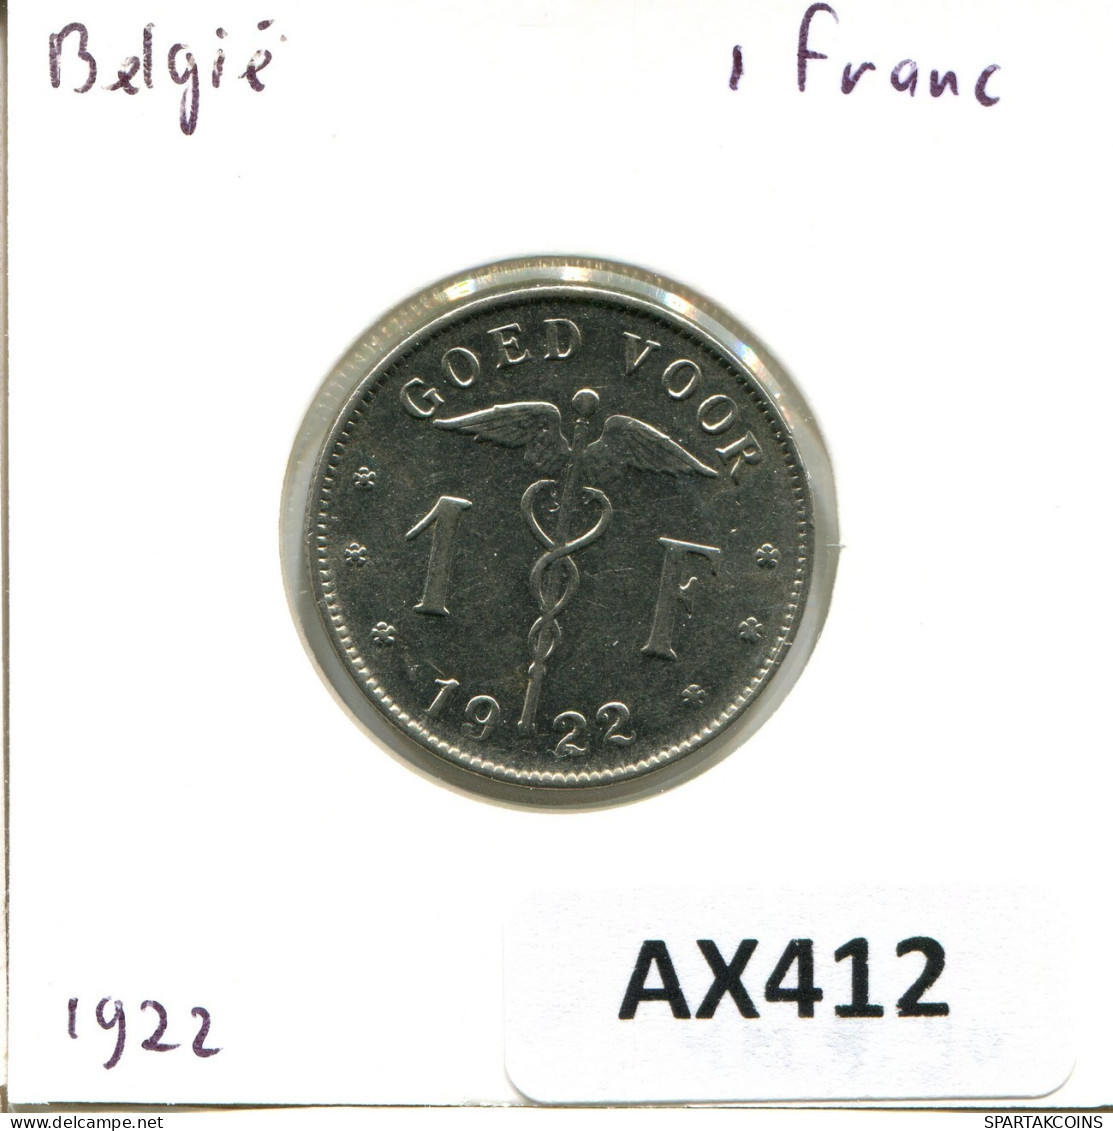 1 FRANC 1922 BELGIQUE BELGIUM Pièce DUTCH Text #AX412.F.A - 1 Frank